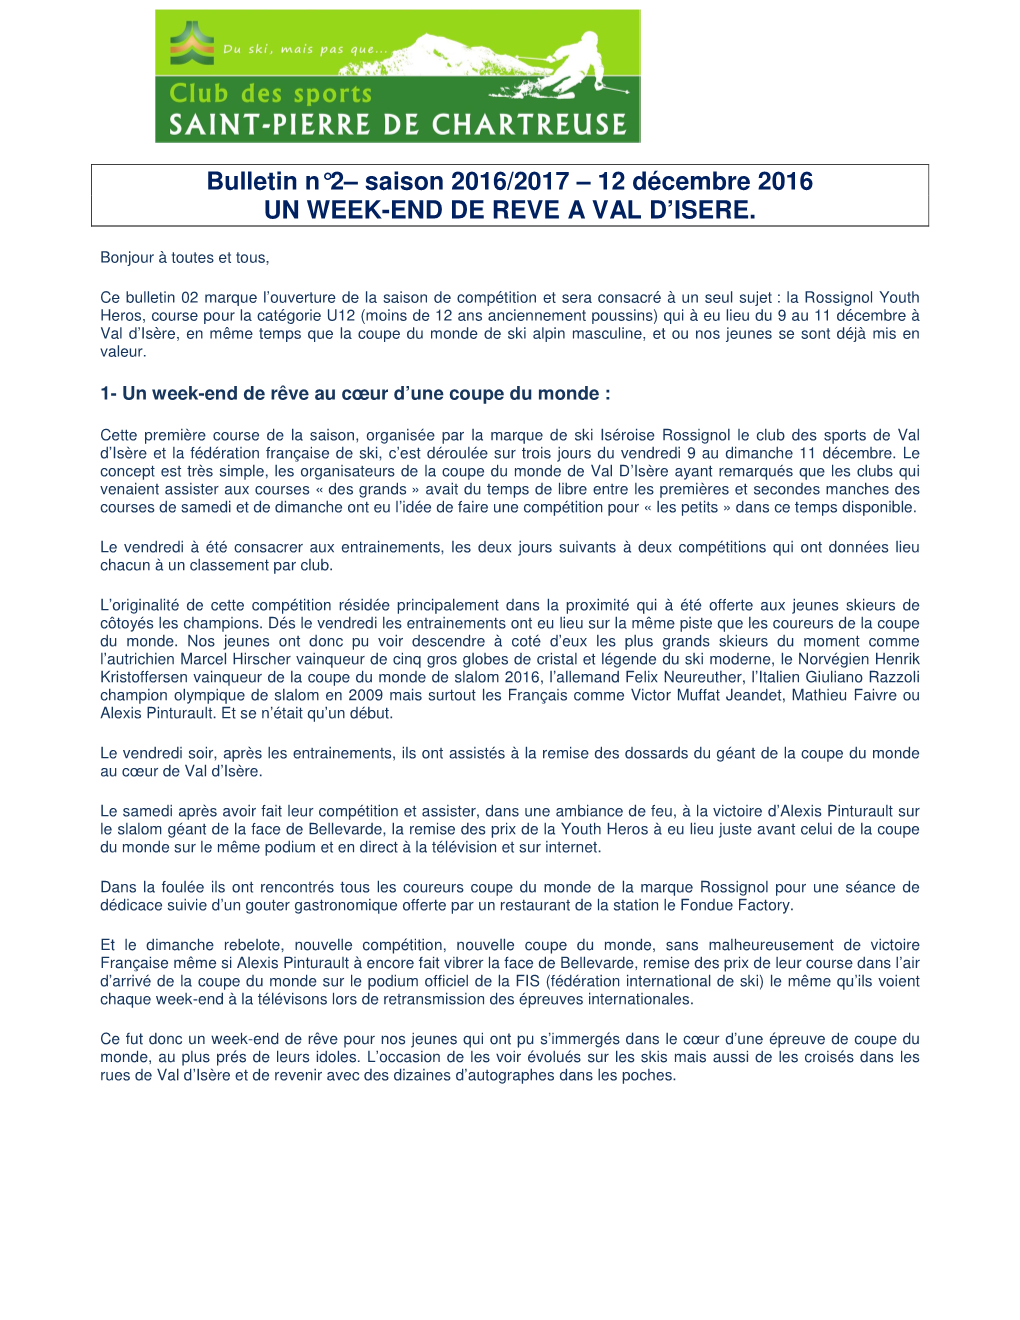 Bulletin N°2– Saison 2016/2017 – 12 Décembre 2016 UN WEEK-END DE REVE a VAL D’ISERE